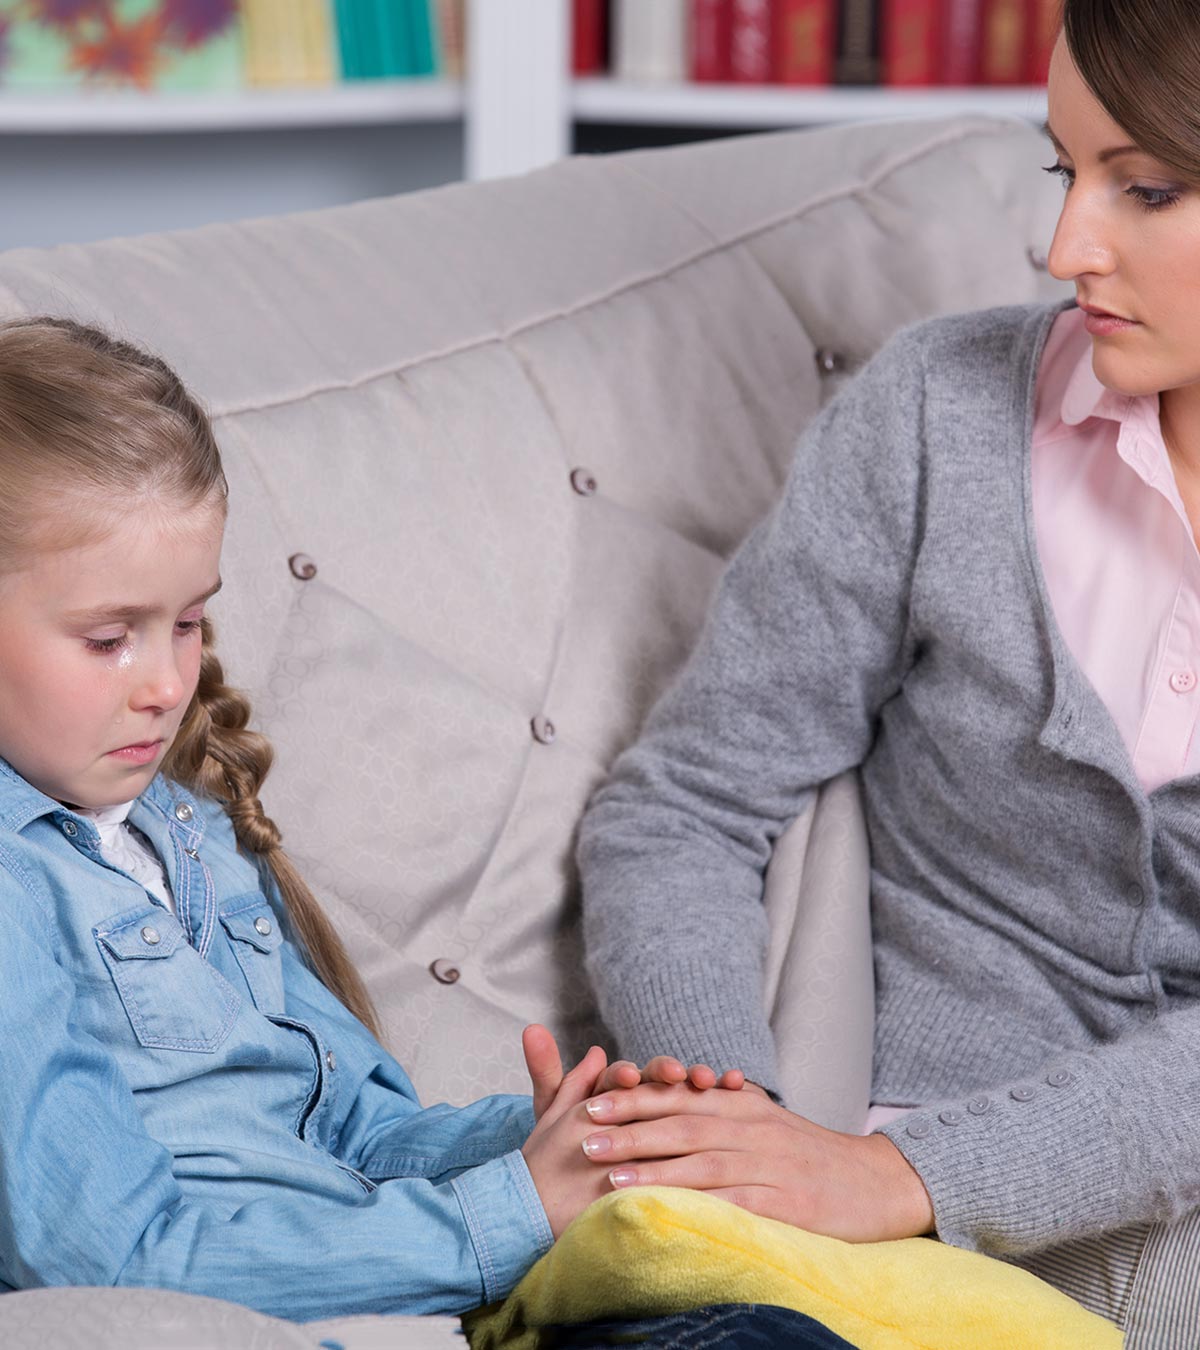 11 Tips To Understand Emotional Development In Children